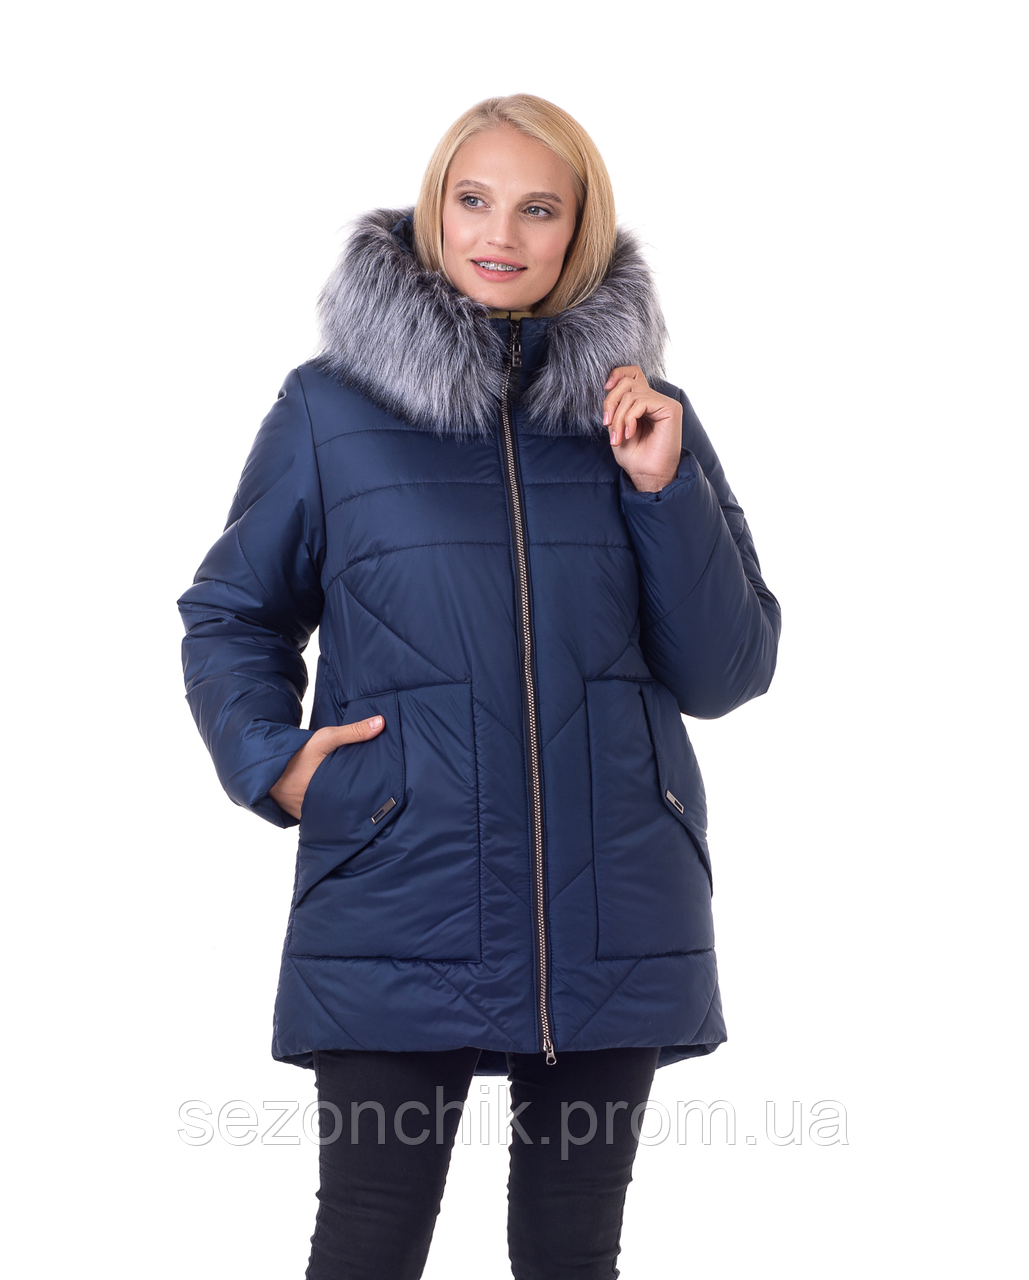 Стильна жіноча модна куртка з натуральним хутром